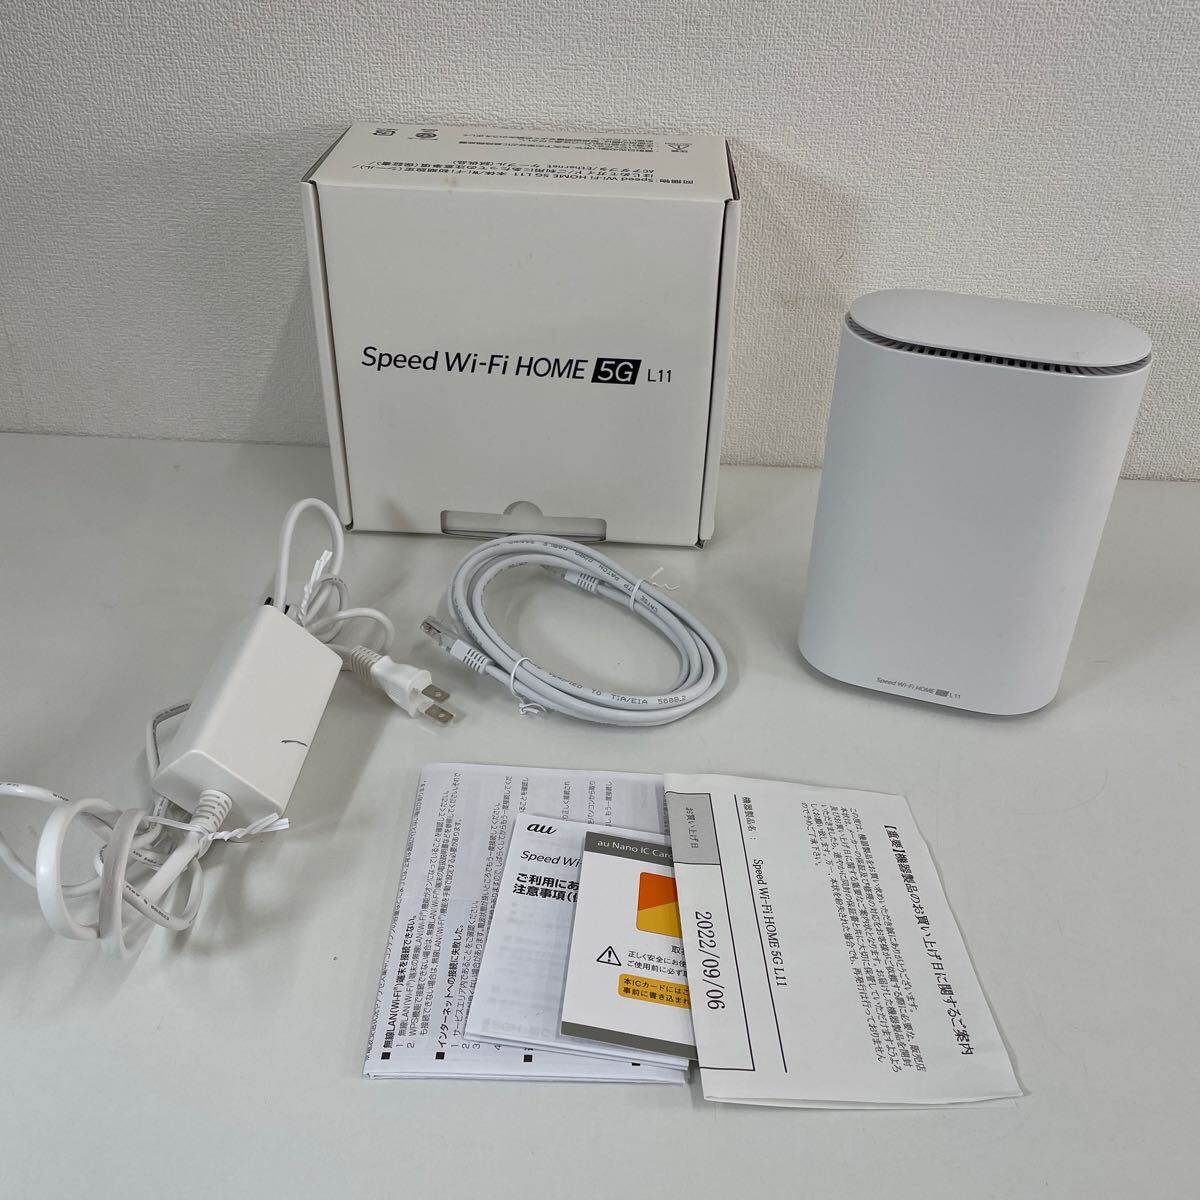 Z* KDDI Speed Wi-Fi HOME 5G L11 белый Home маршрутизатор царапина загрязнения есть 